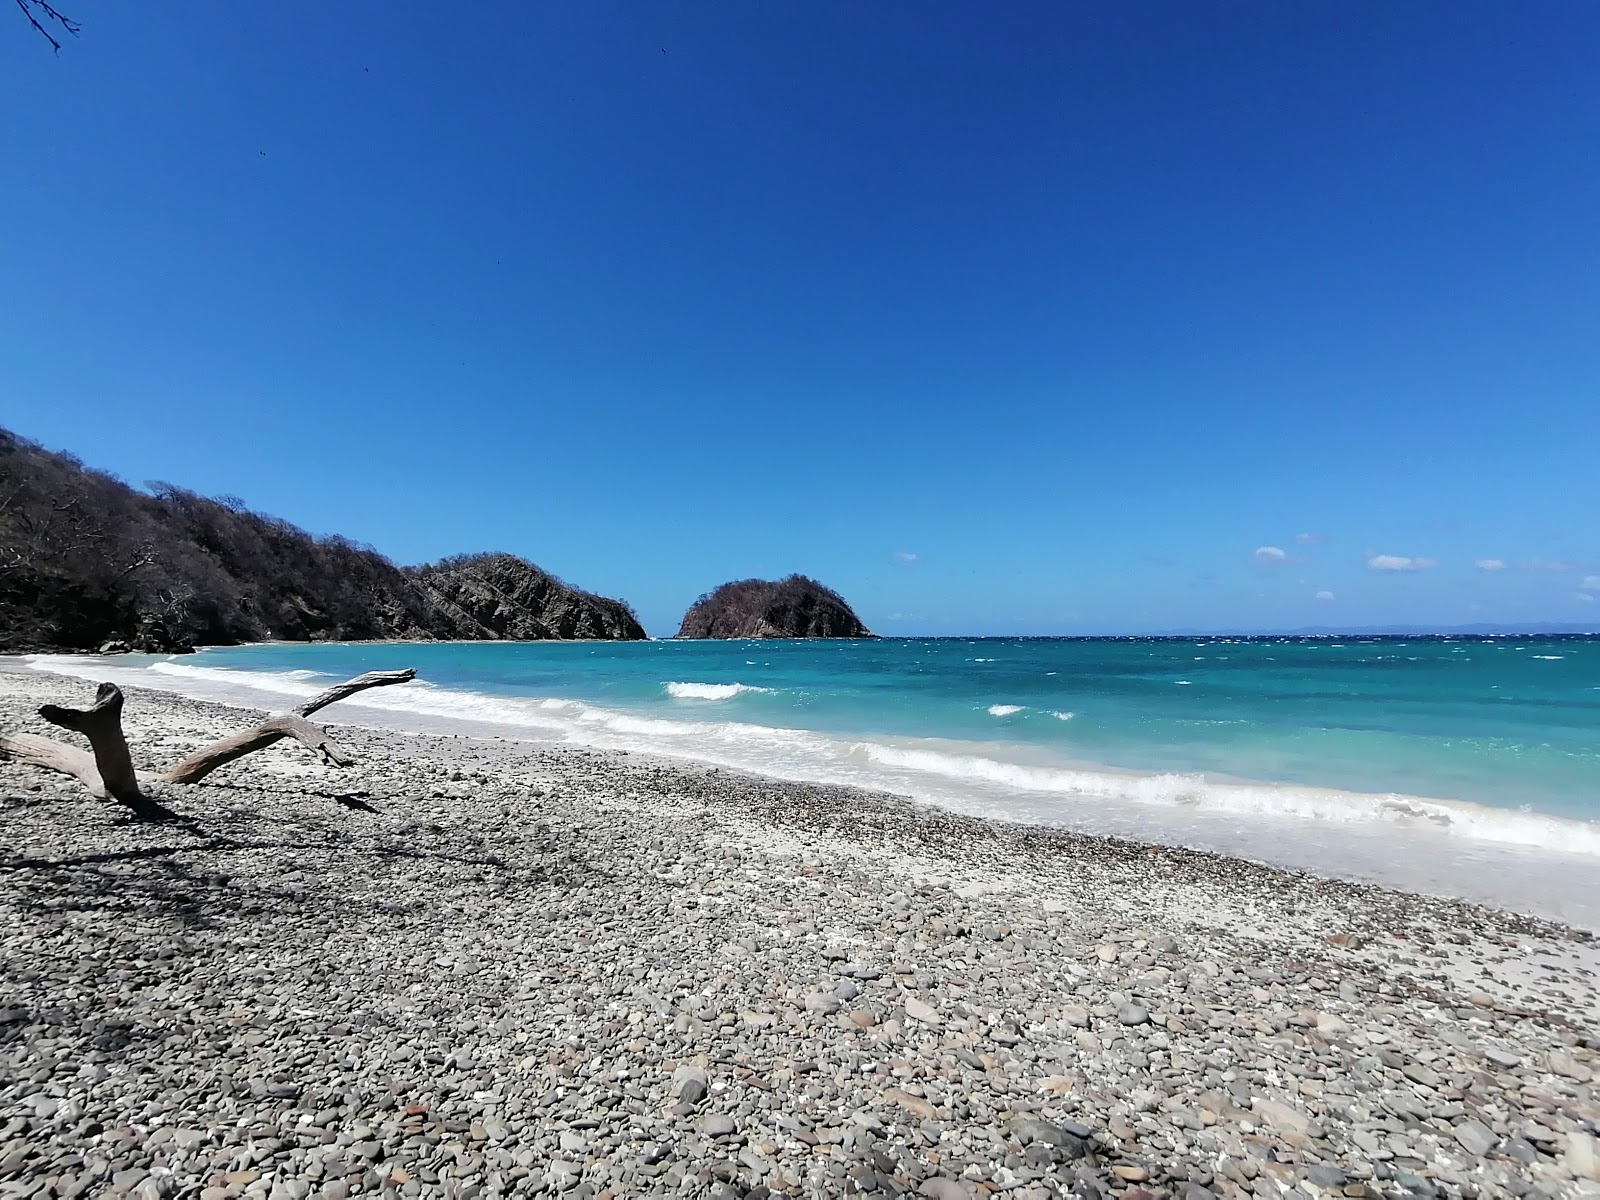 Fotografija Matapalito beach z prostoren zaliv